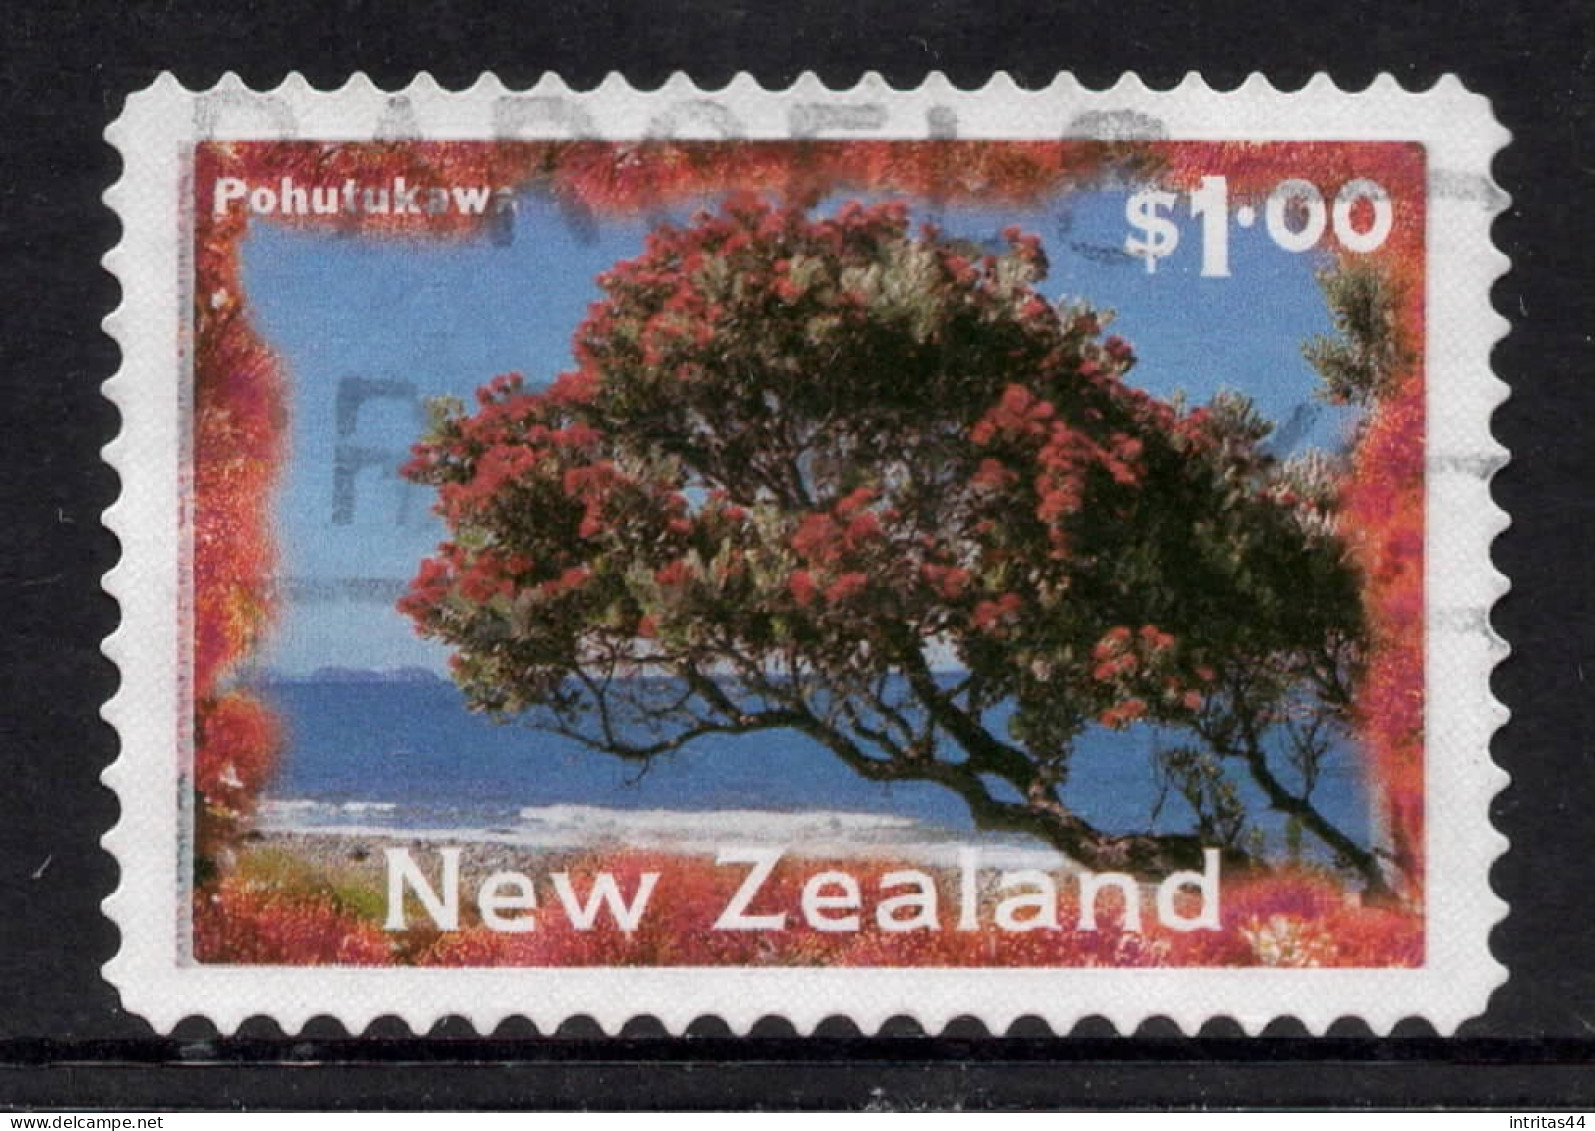 NEW ZEALAND 1996 AIRPOST  $1.00 " POHUTUKAWA " SA.  STAMP VFU - Gebruikt